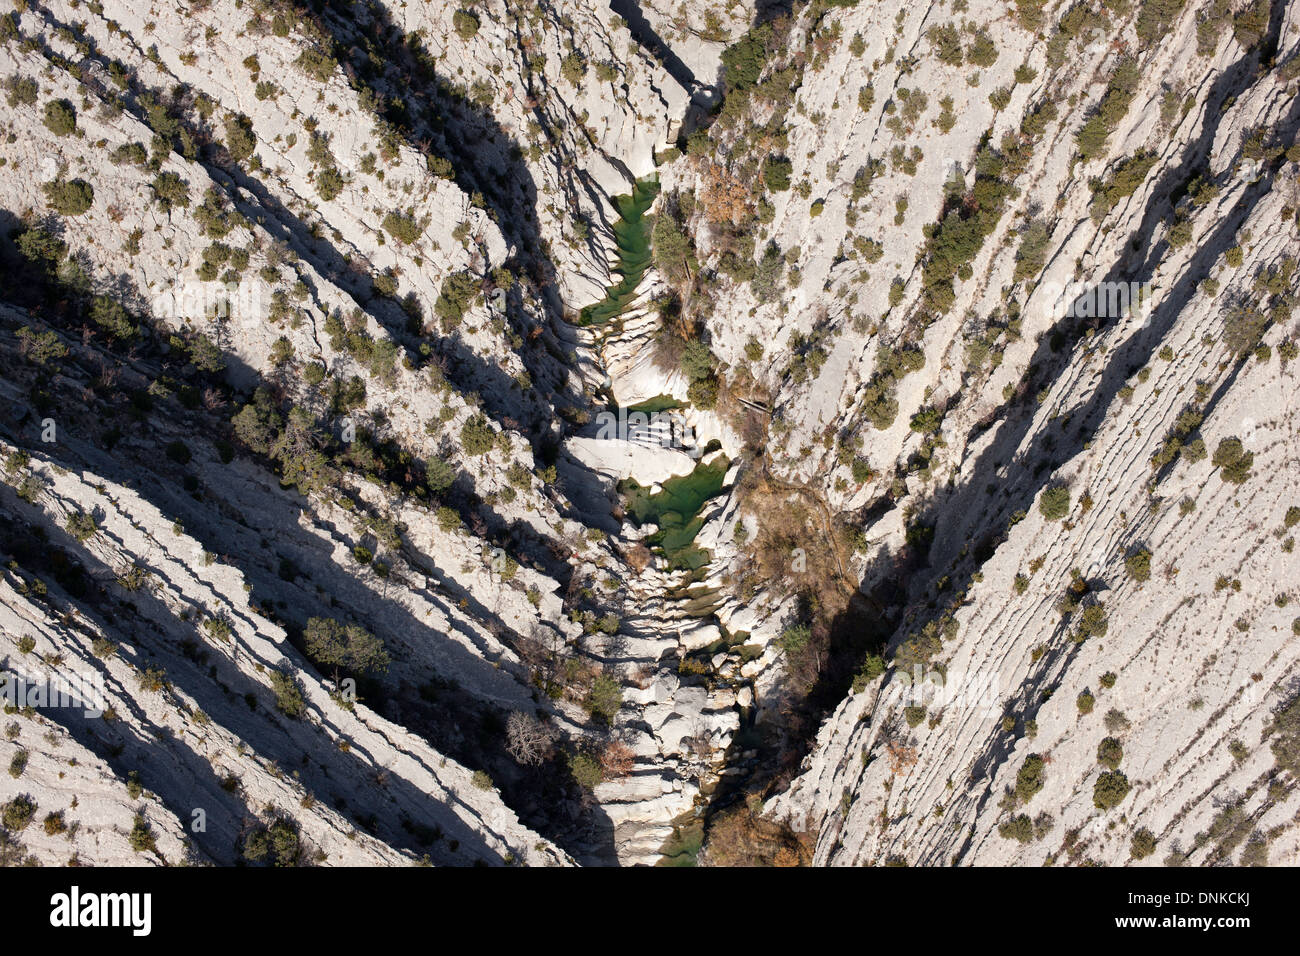 VUE AÉRIENNE.Canyon en forme de V de strates de calcaire obliques.Canyon de Riolan, Sigale, Alpes-Maritimes, arrière-pays de la Côte d'Azur, France. Banque D'Images